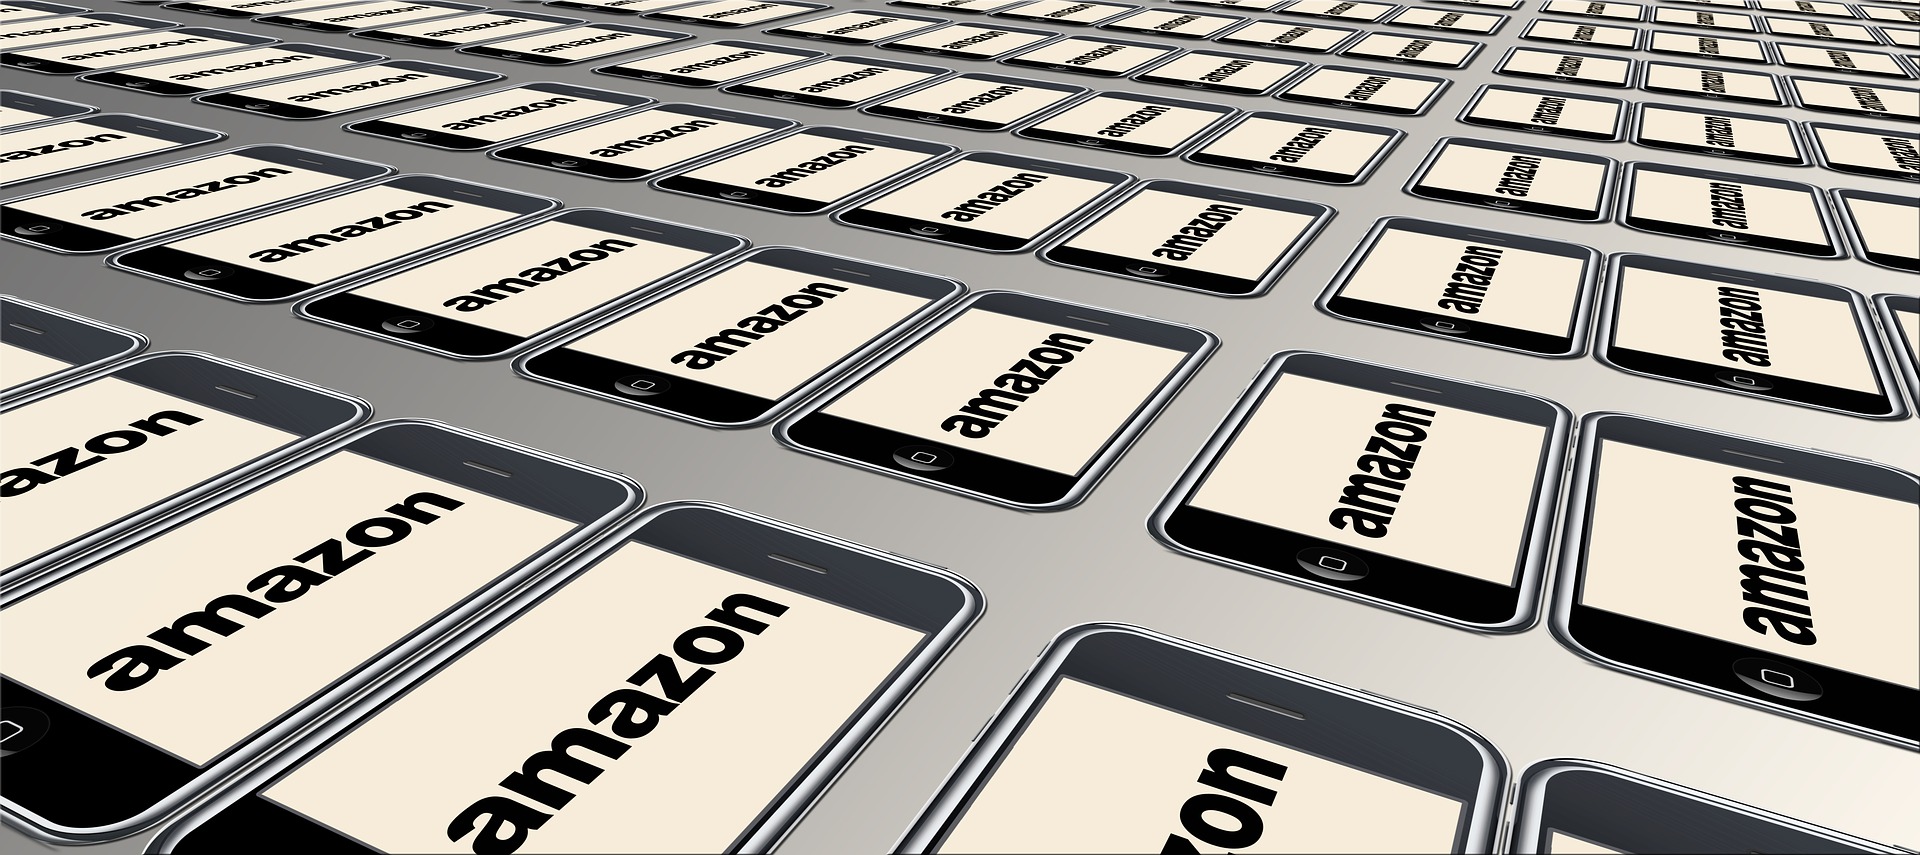 Amazon devient la marque la plus forte du monde, devant Google et Apple